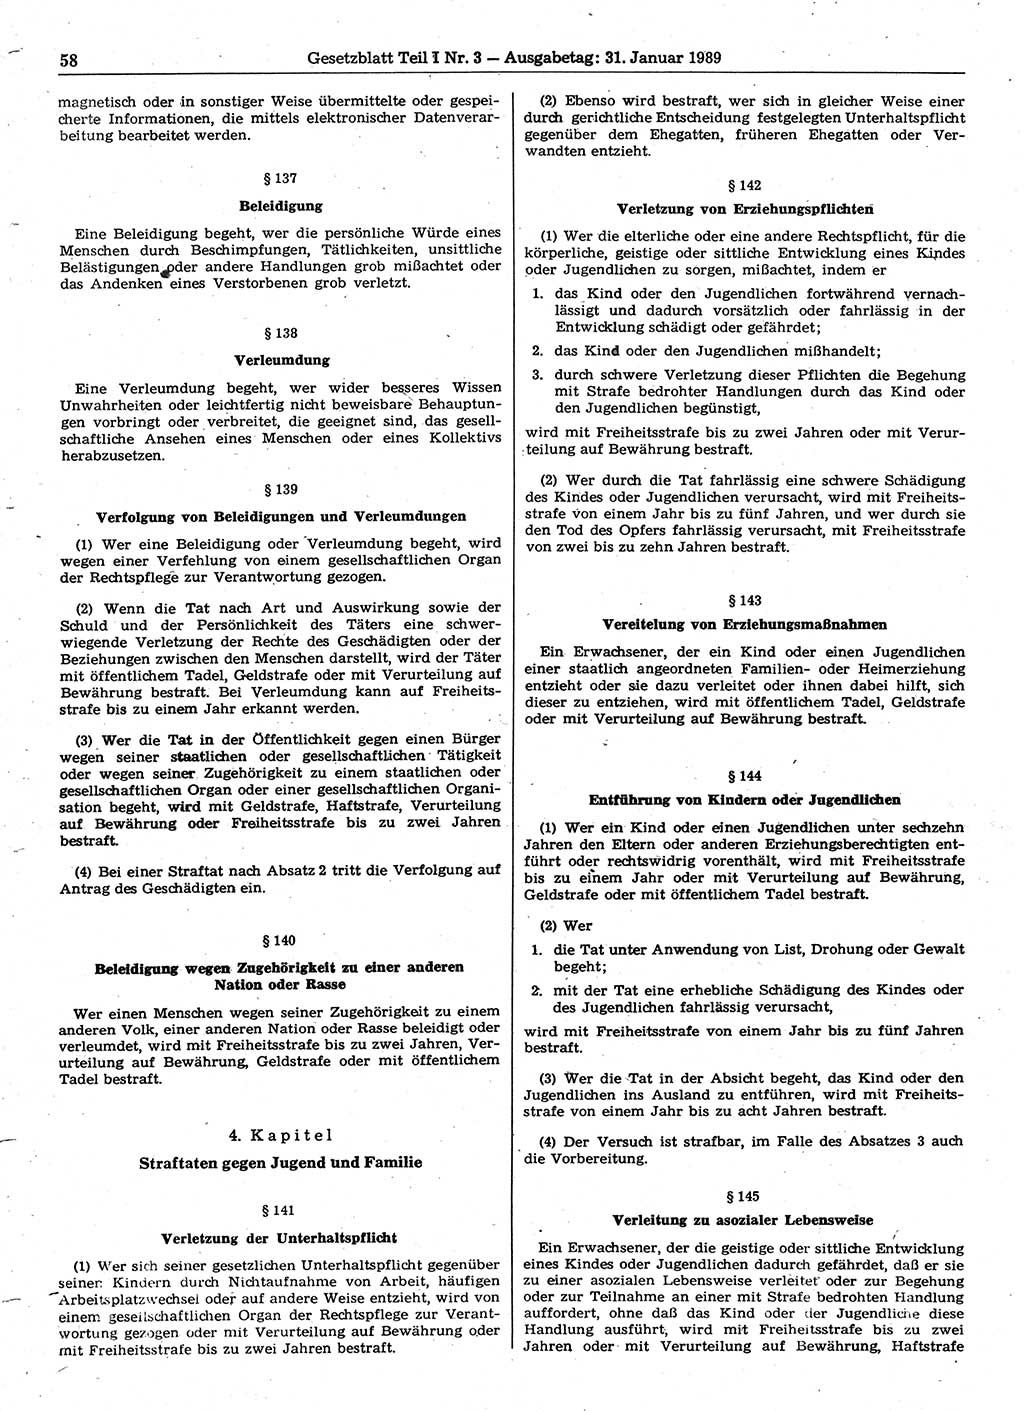 Gesetzblatt (GBl.) der Deutschen Demokratischen Republik (DDR) Teil Ⅰ 1989, Seite 58 (GBl. DDR Ⅰ 1989, S. 58)